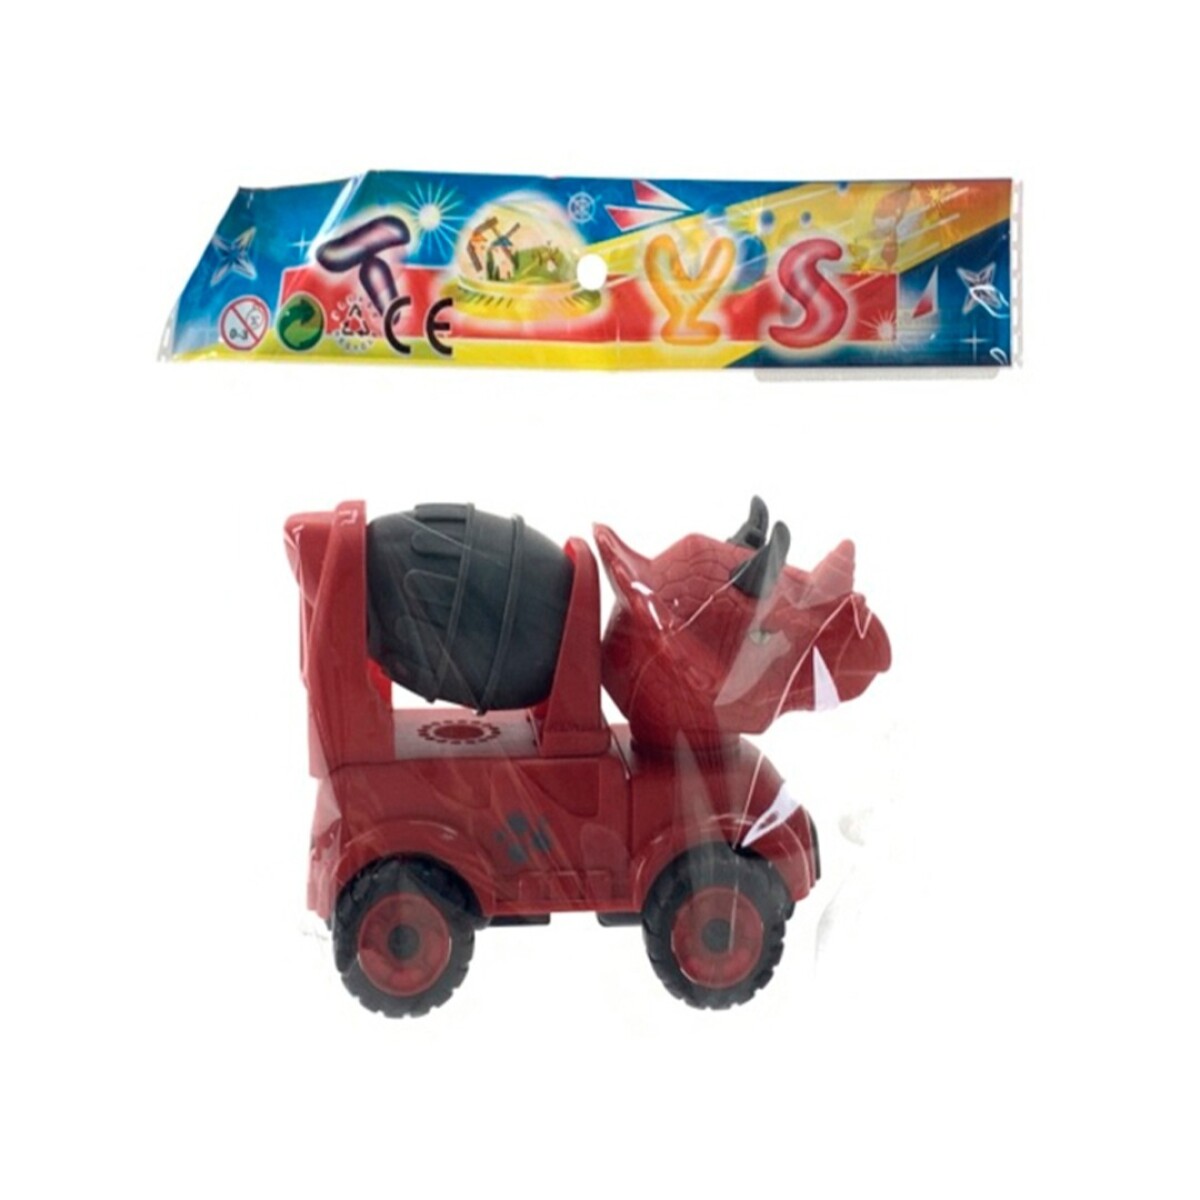 Camión Dinosaurio en Bolsa GG0401 - 001 